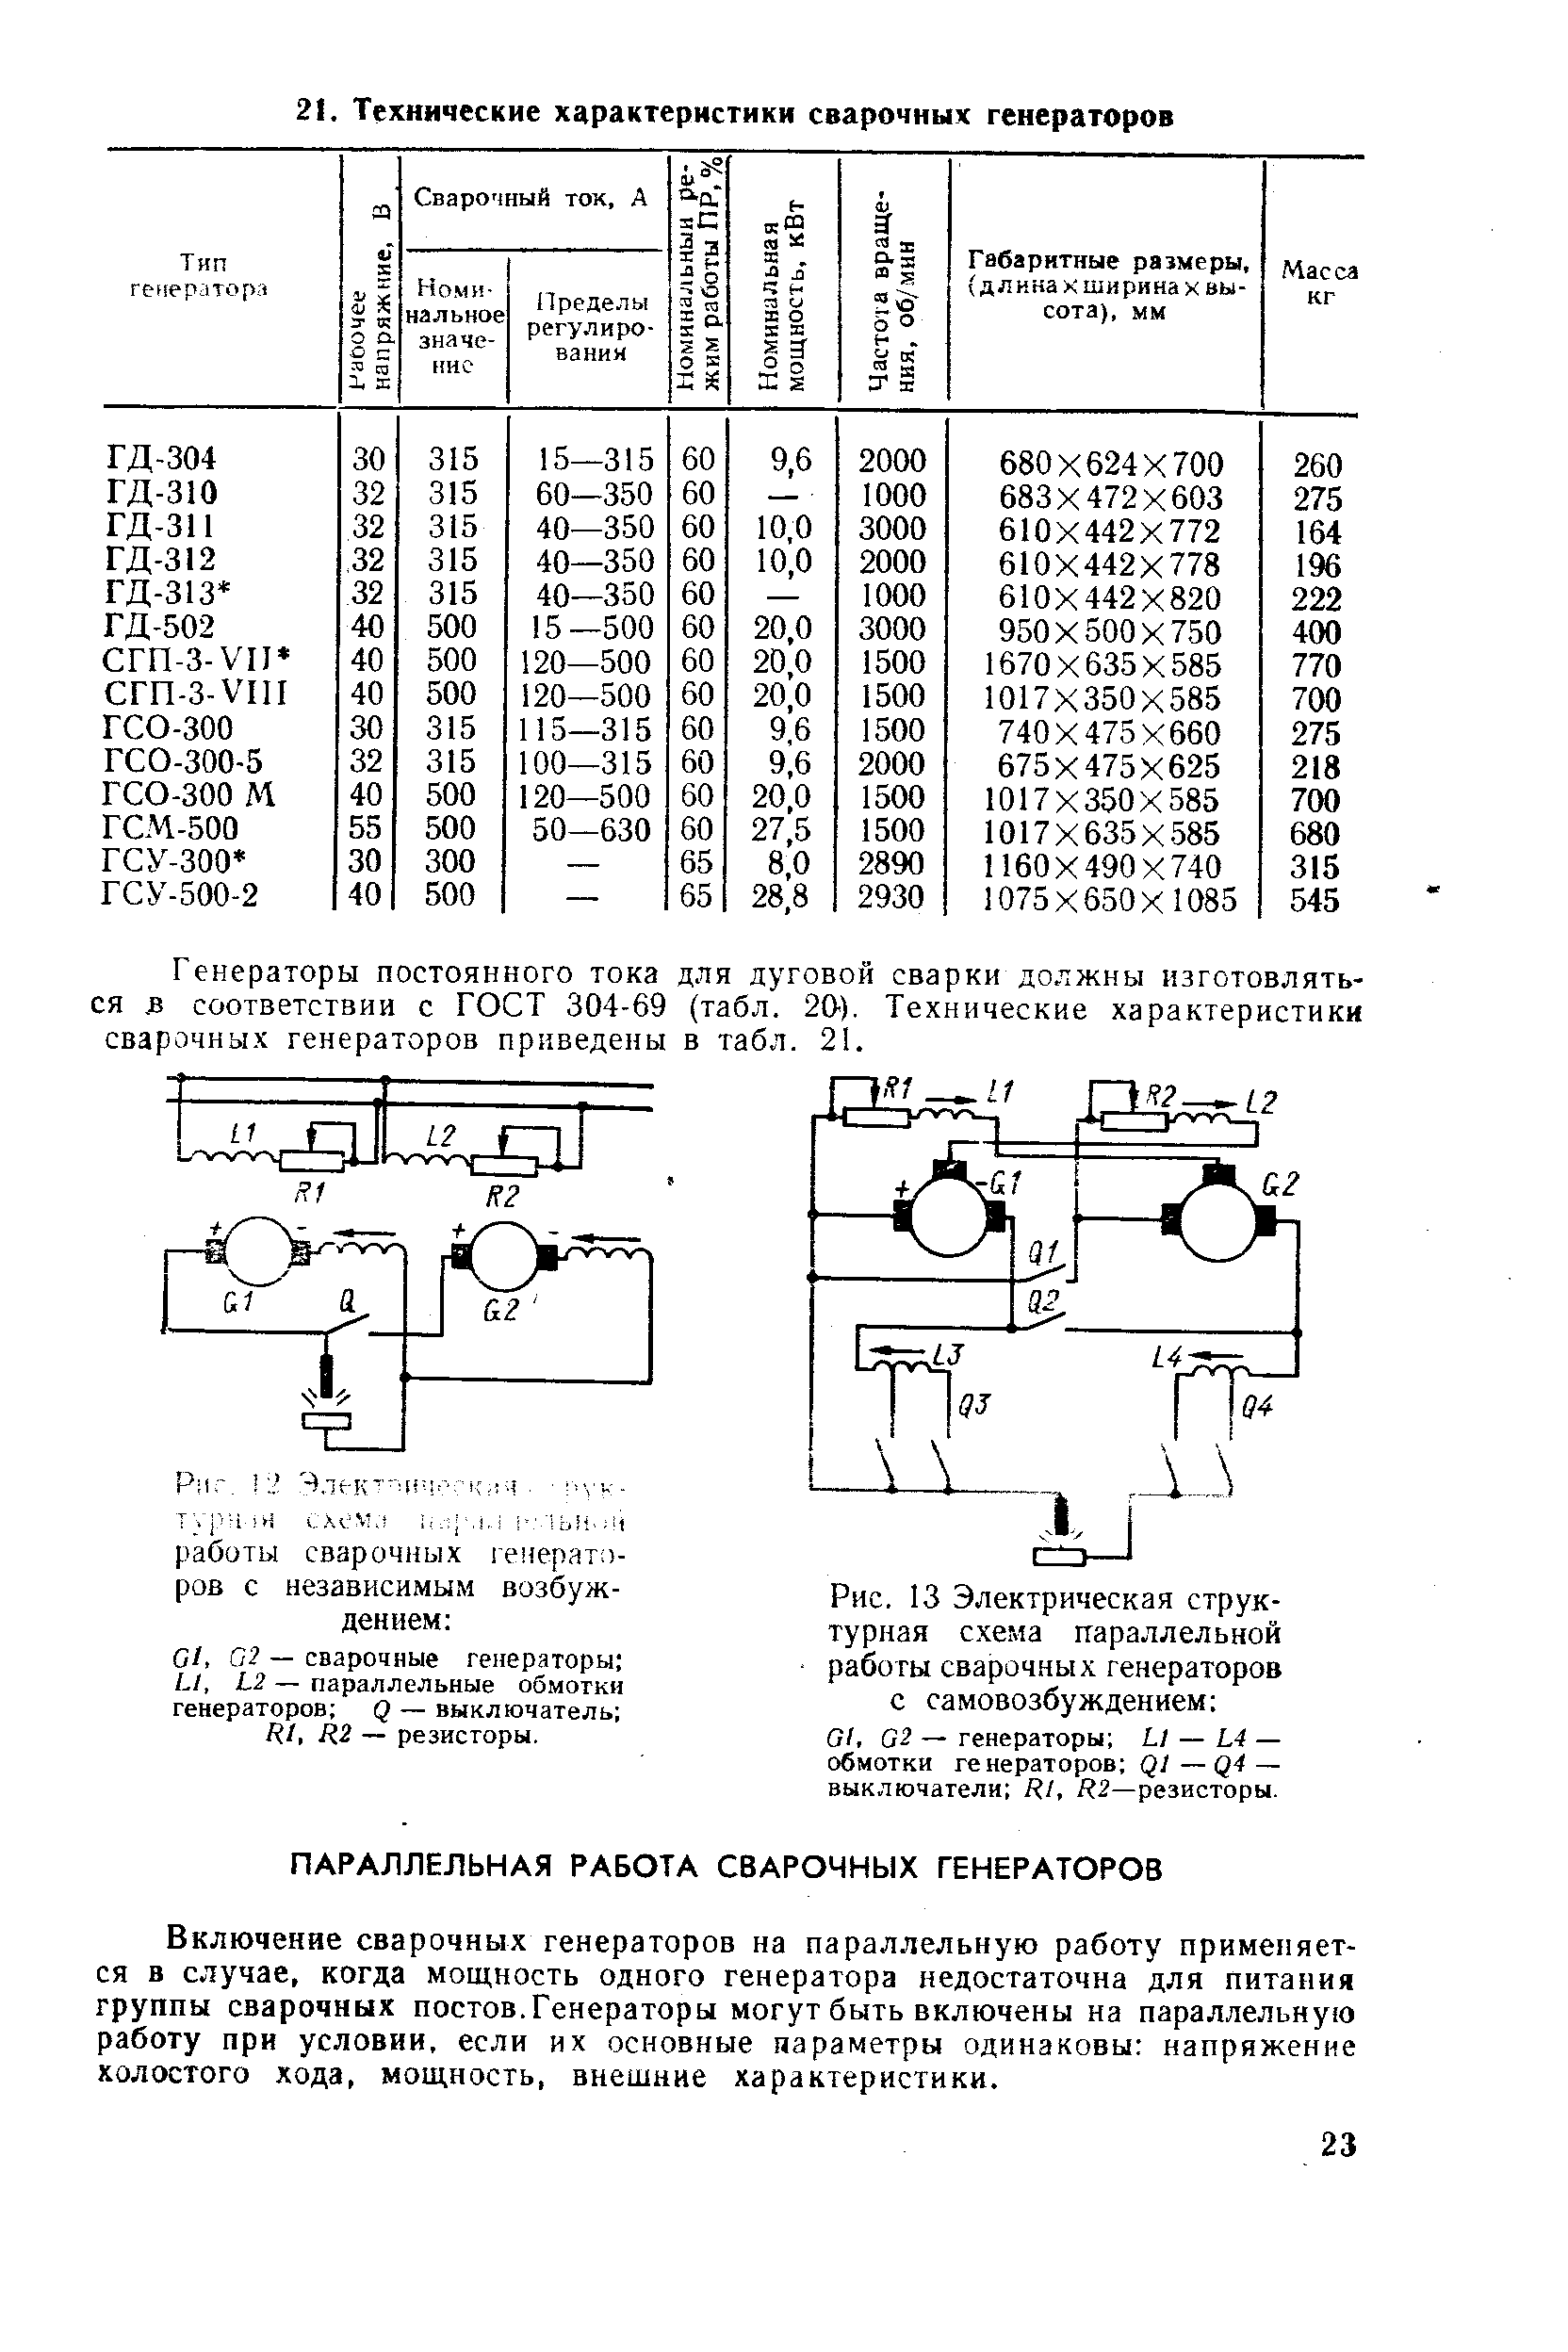 Рис. 13 Электрическая структурная с.хема параллельной работы сварочных генераторов с самовозбуждением 
